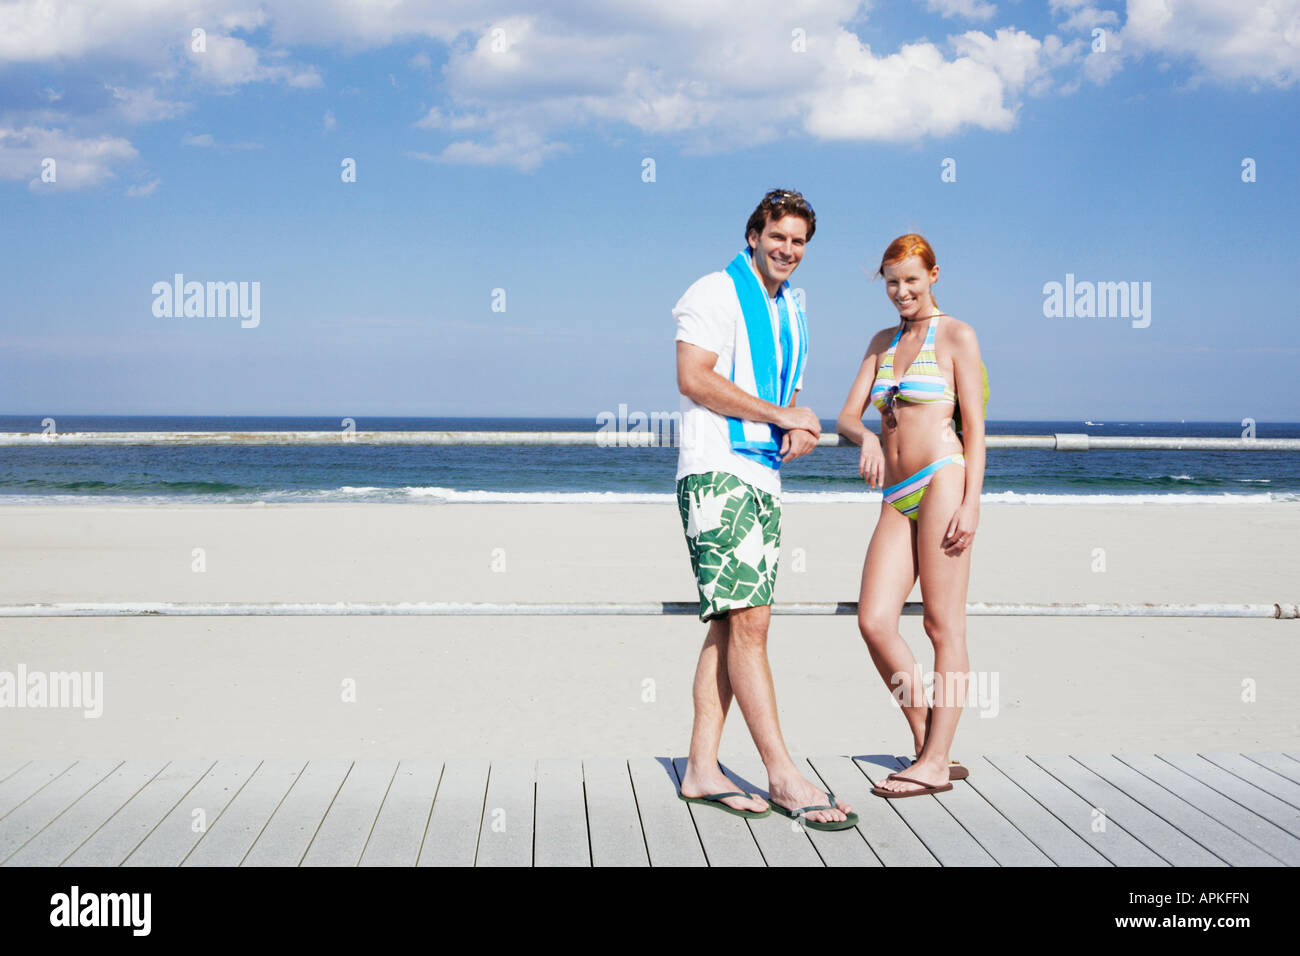 Coppia giovane da ringhiere in spiaggia (verticale), Spring Lake, New Jersey, STATI UNITI D'AMERICA Foto Stock